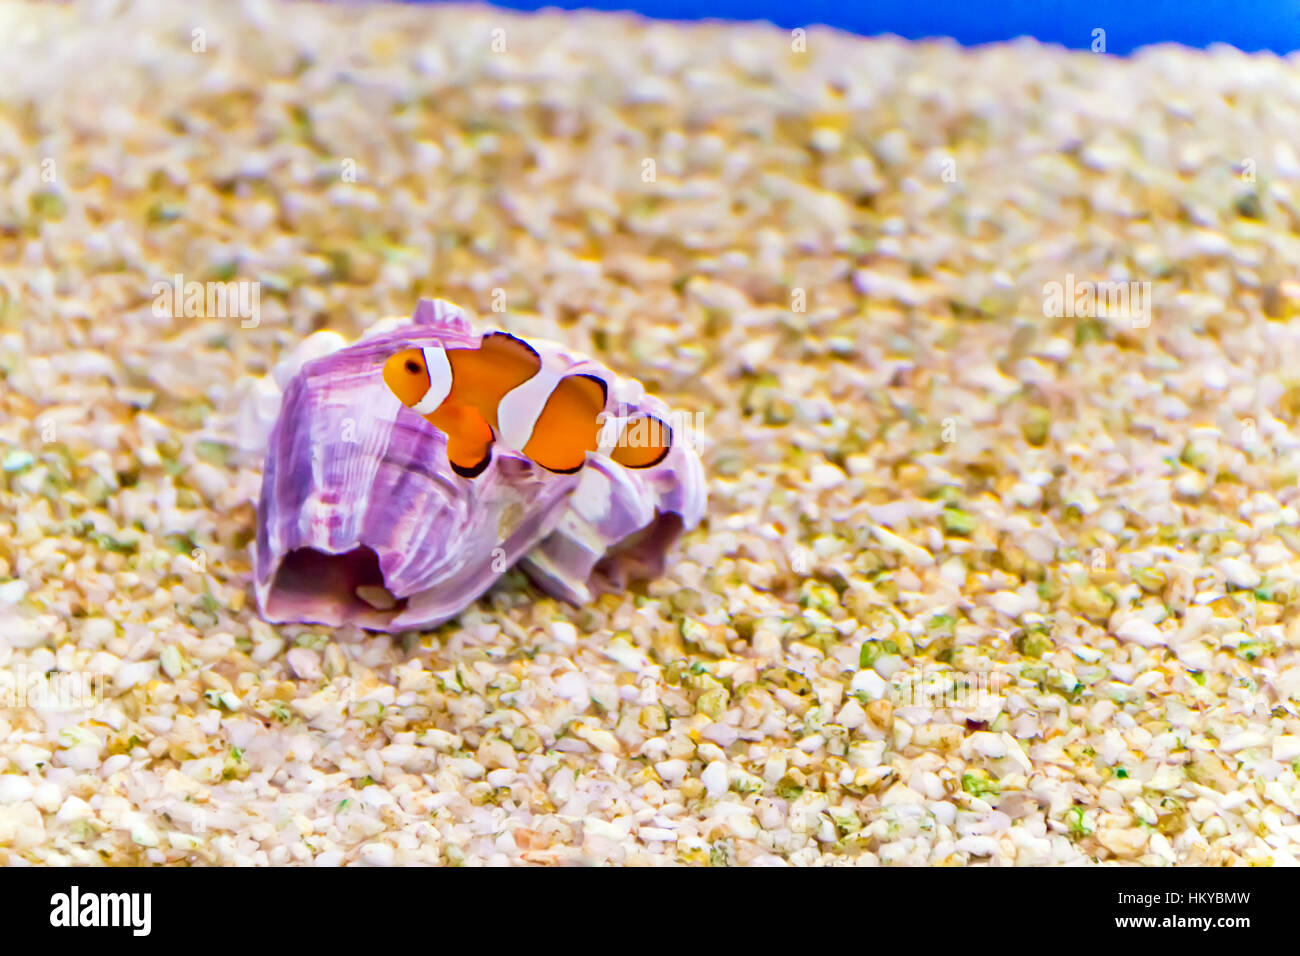 Foto di acquario pesce pagliaccio amphiprion percula Foto Stock